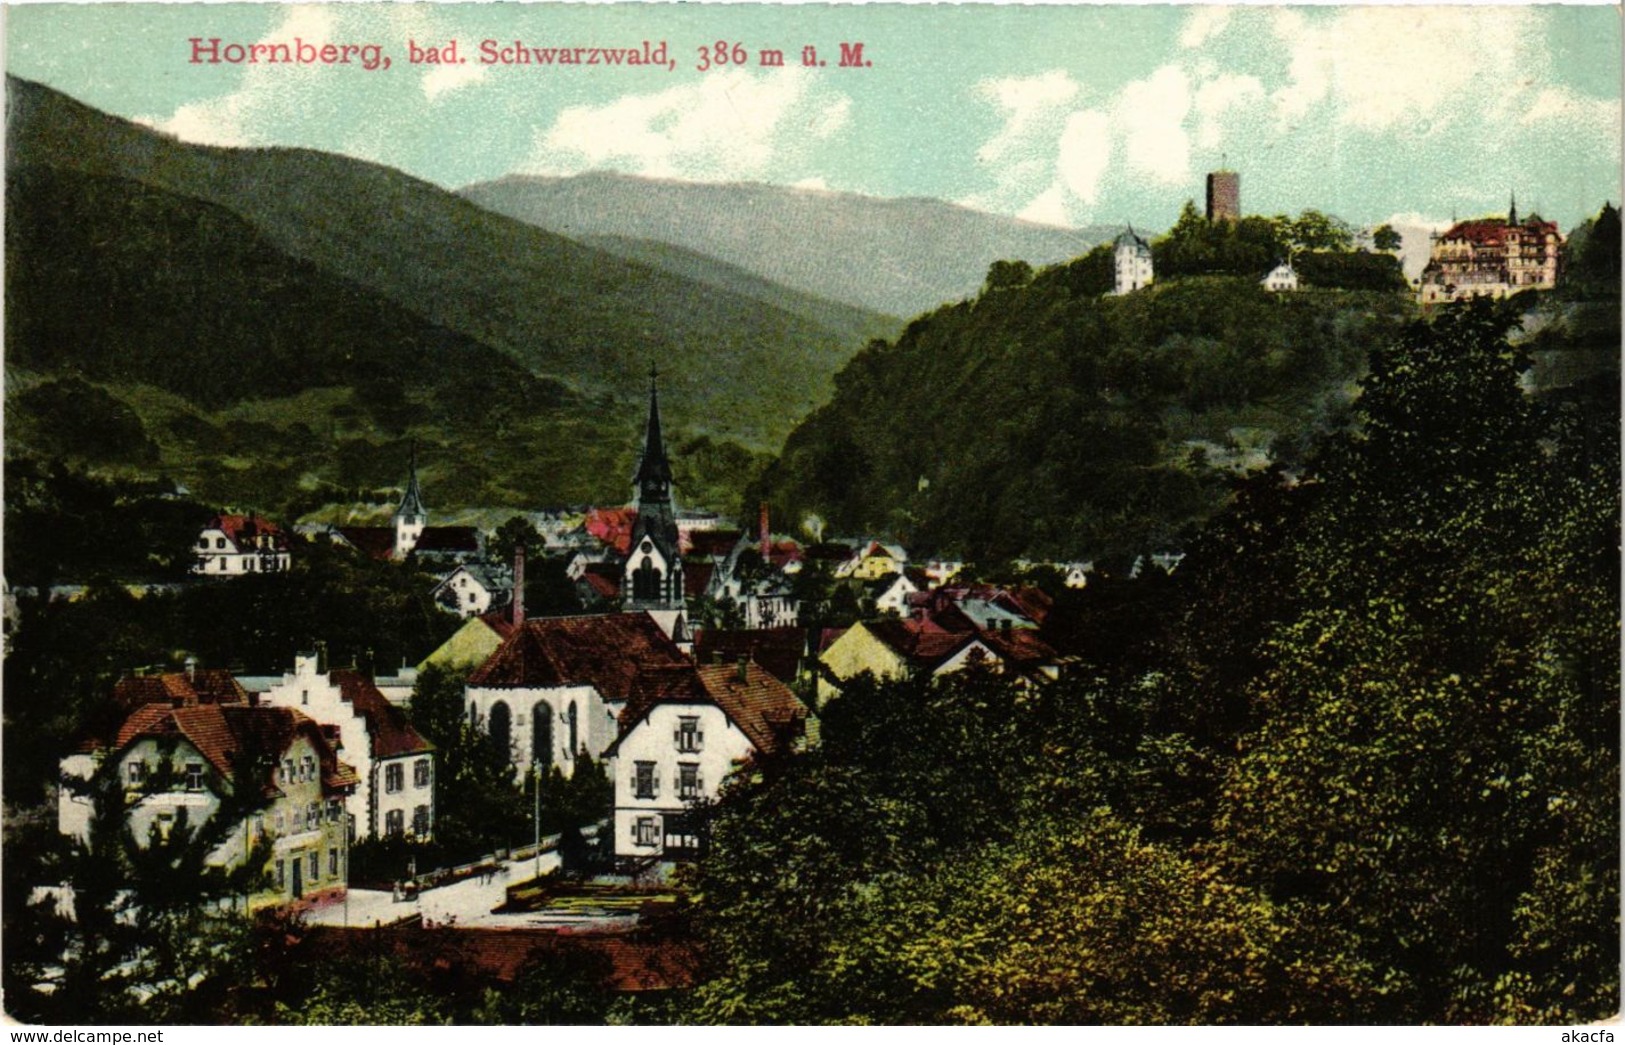 CPA AK Hornberg Bad Schwarzwald GERMANY (934559) - Hornberg